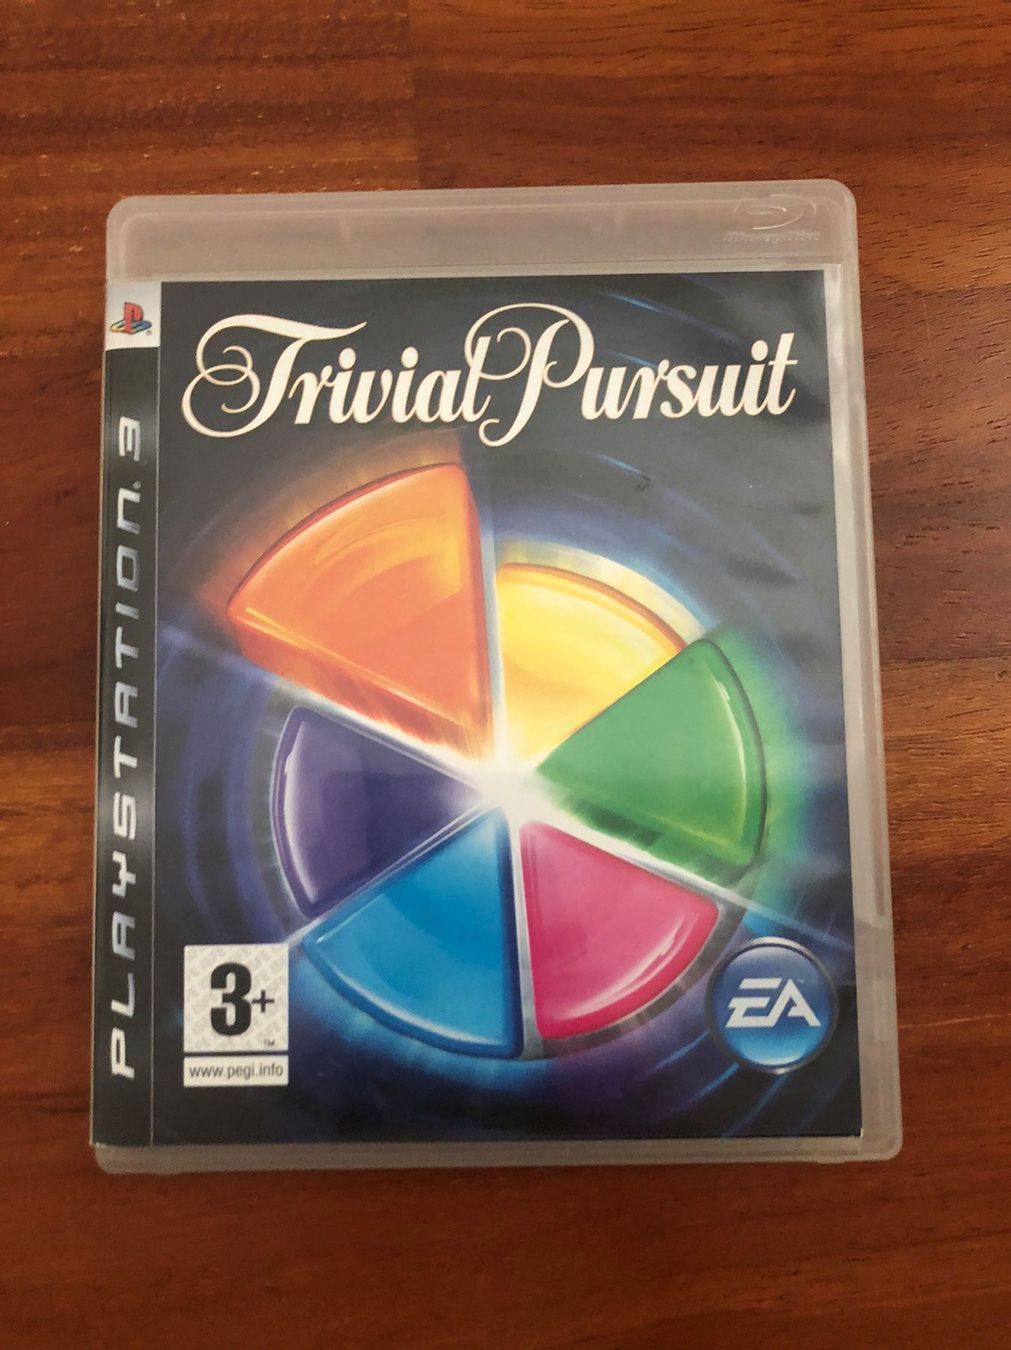 trivial pursuit ps3